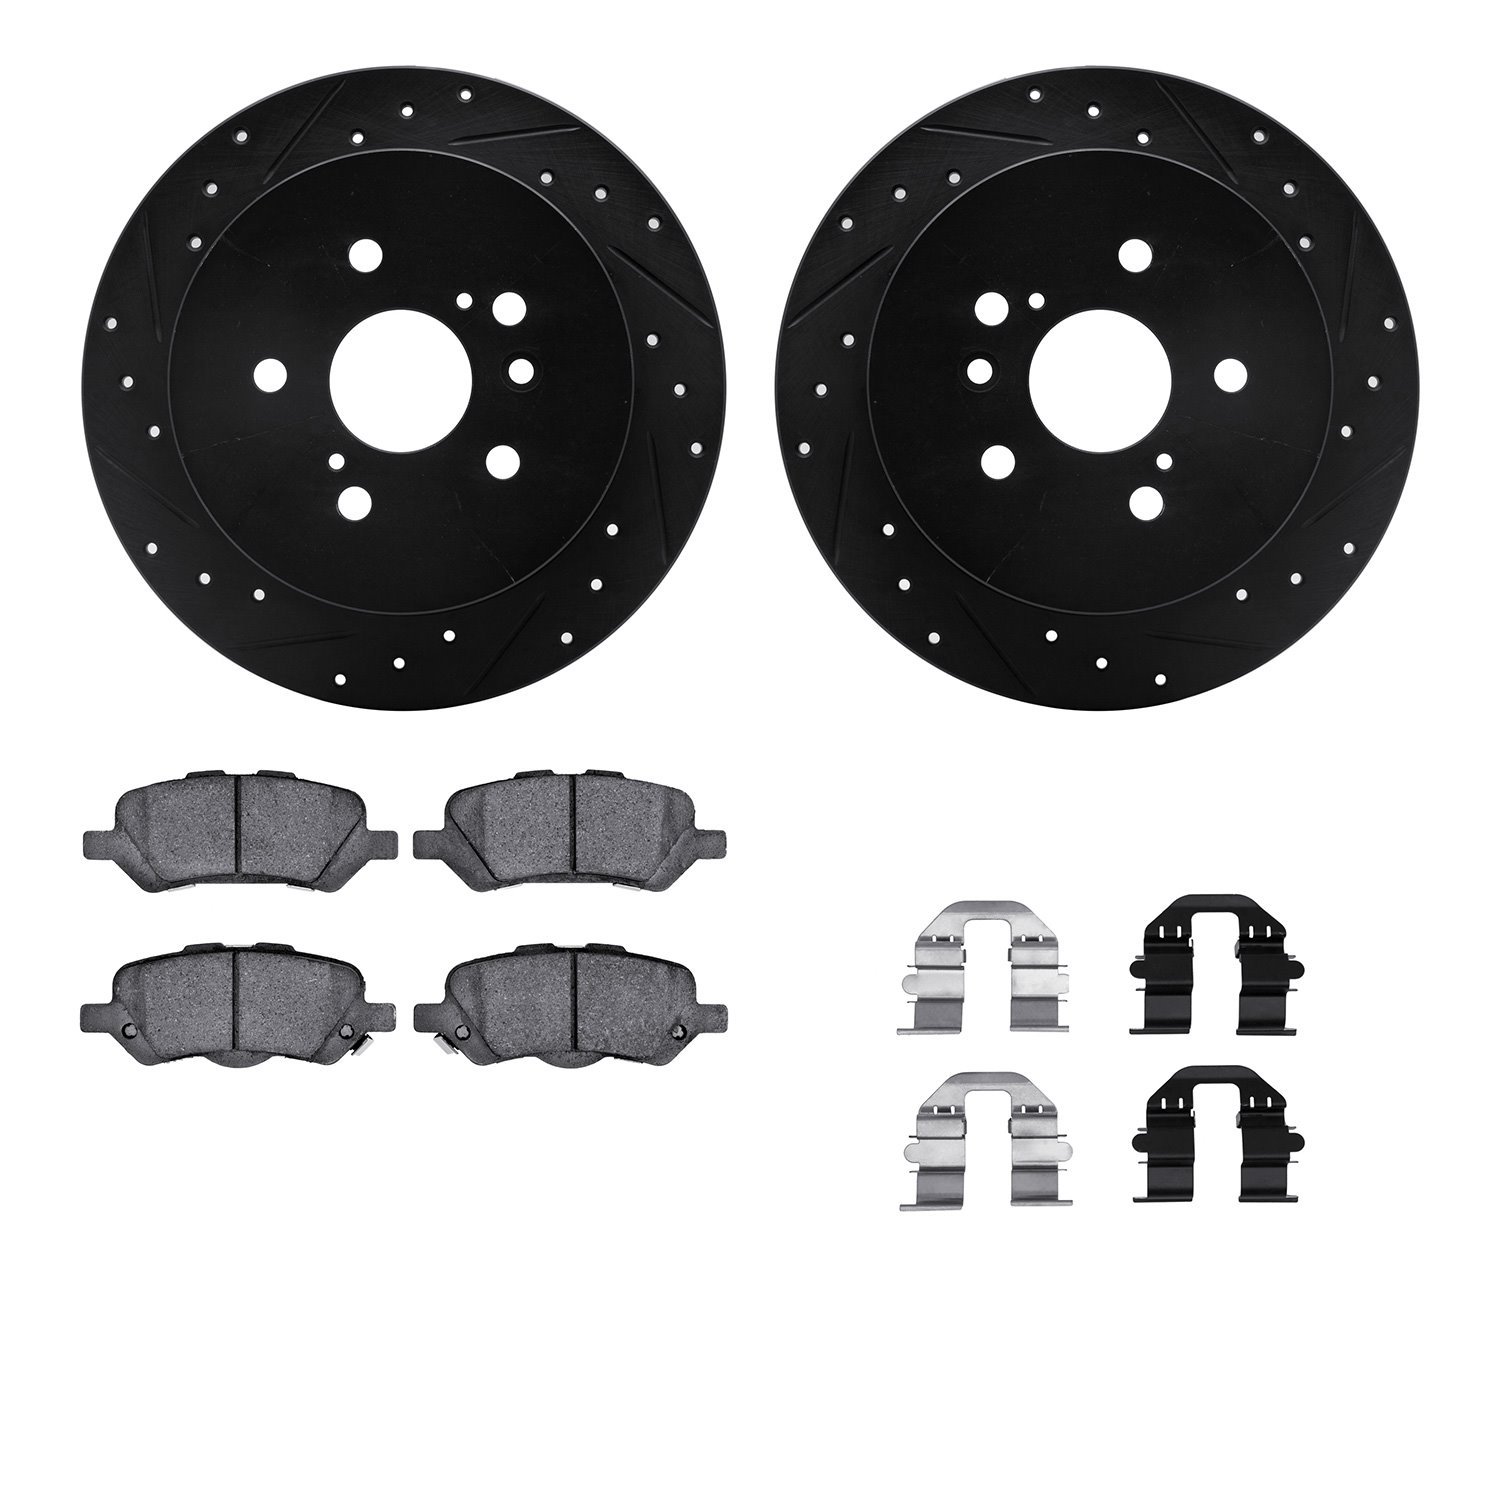 8312-76169 Drilled/Slotted Brake Rotors with 3000-Series Ceramic Brake Pads Kit & Hardware [Black], 2009-2015 Lexus/Toyota/Scion